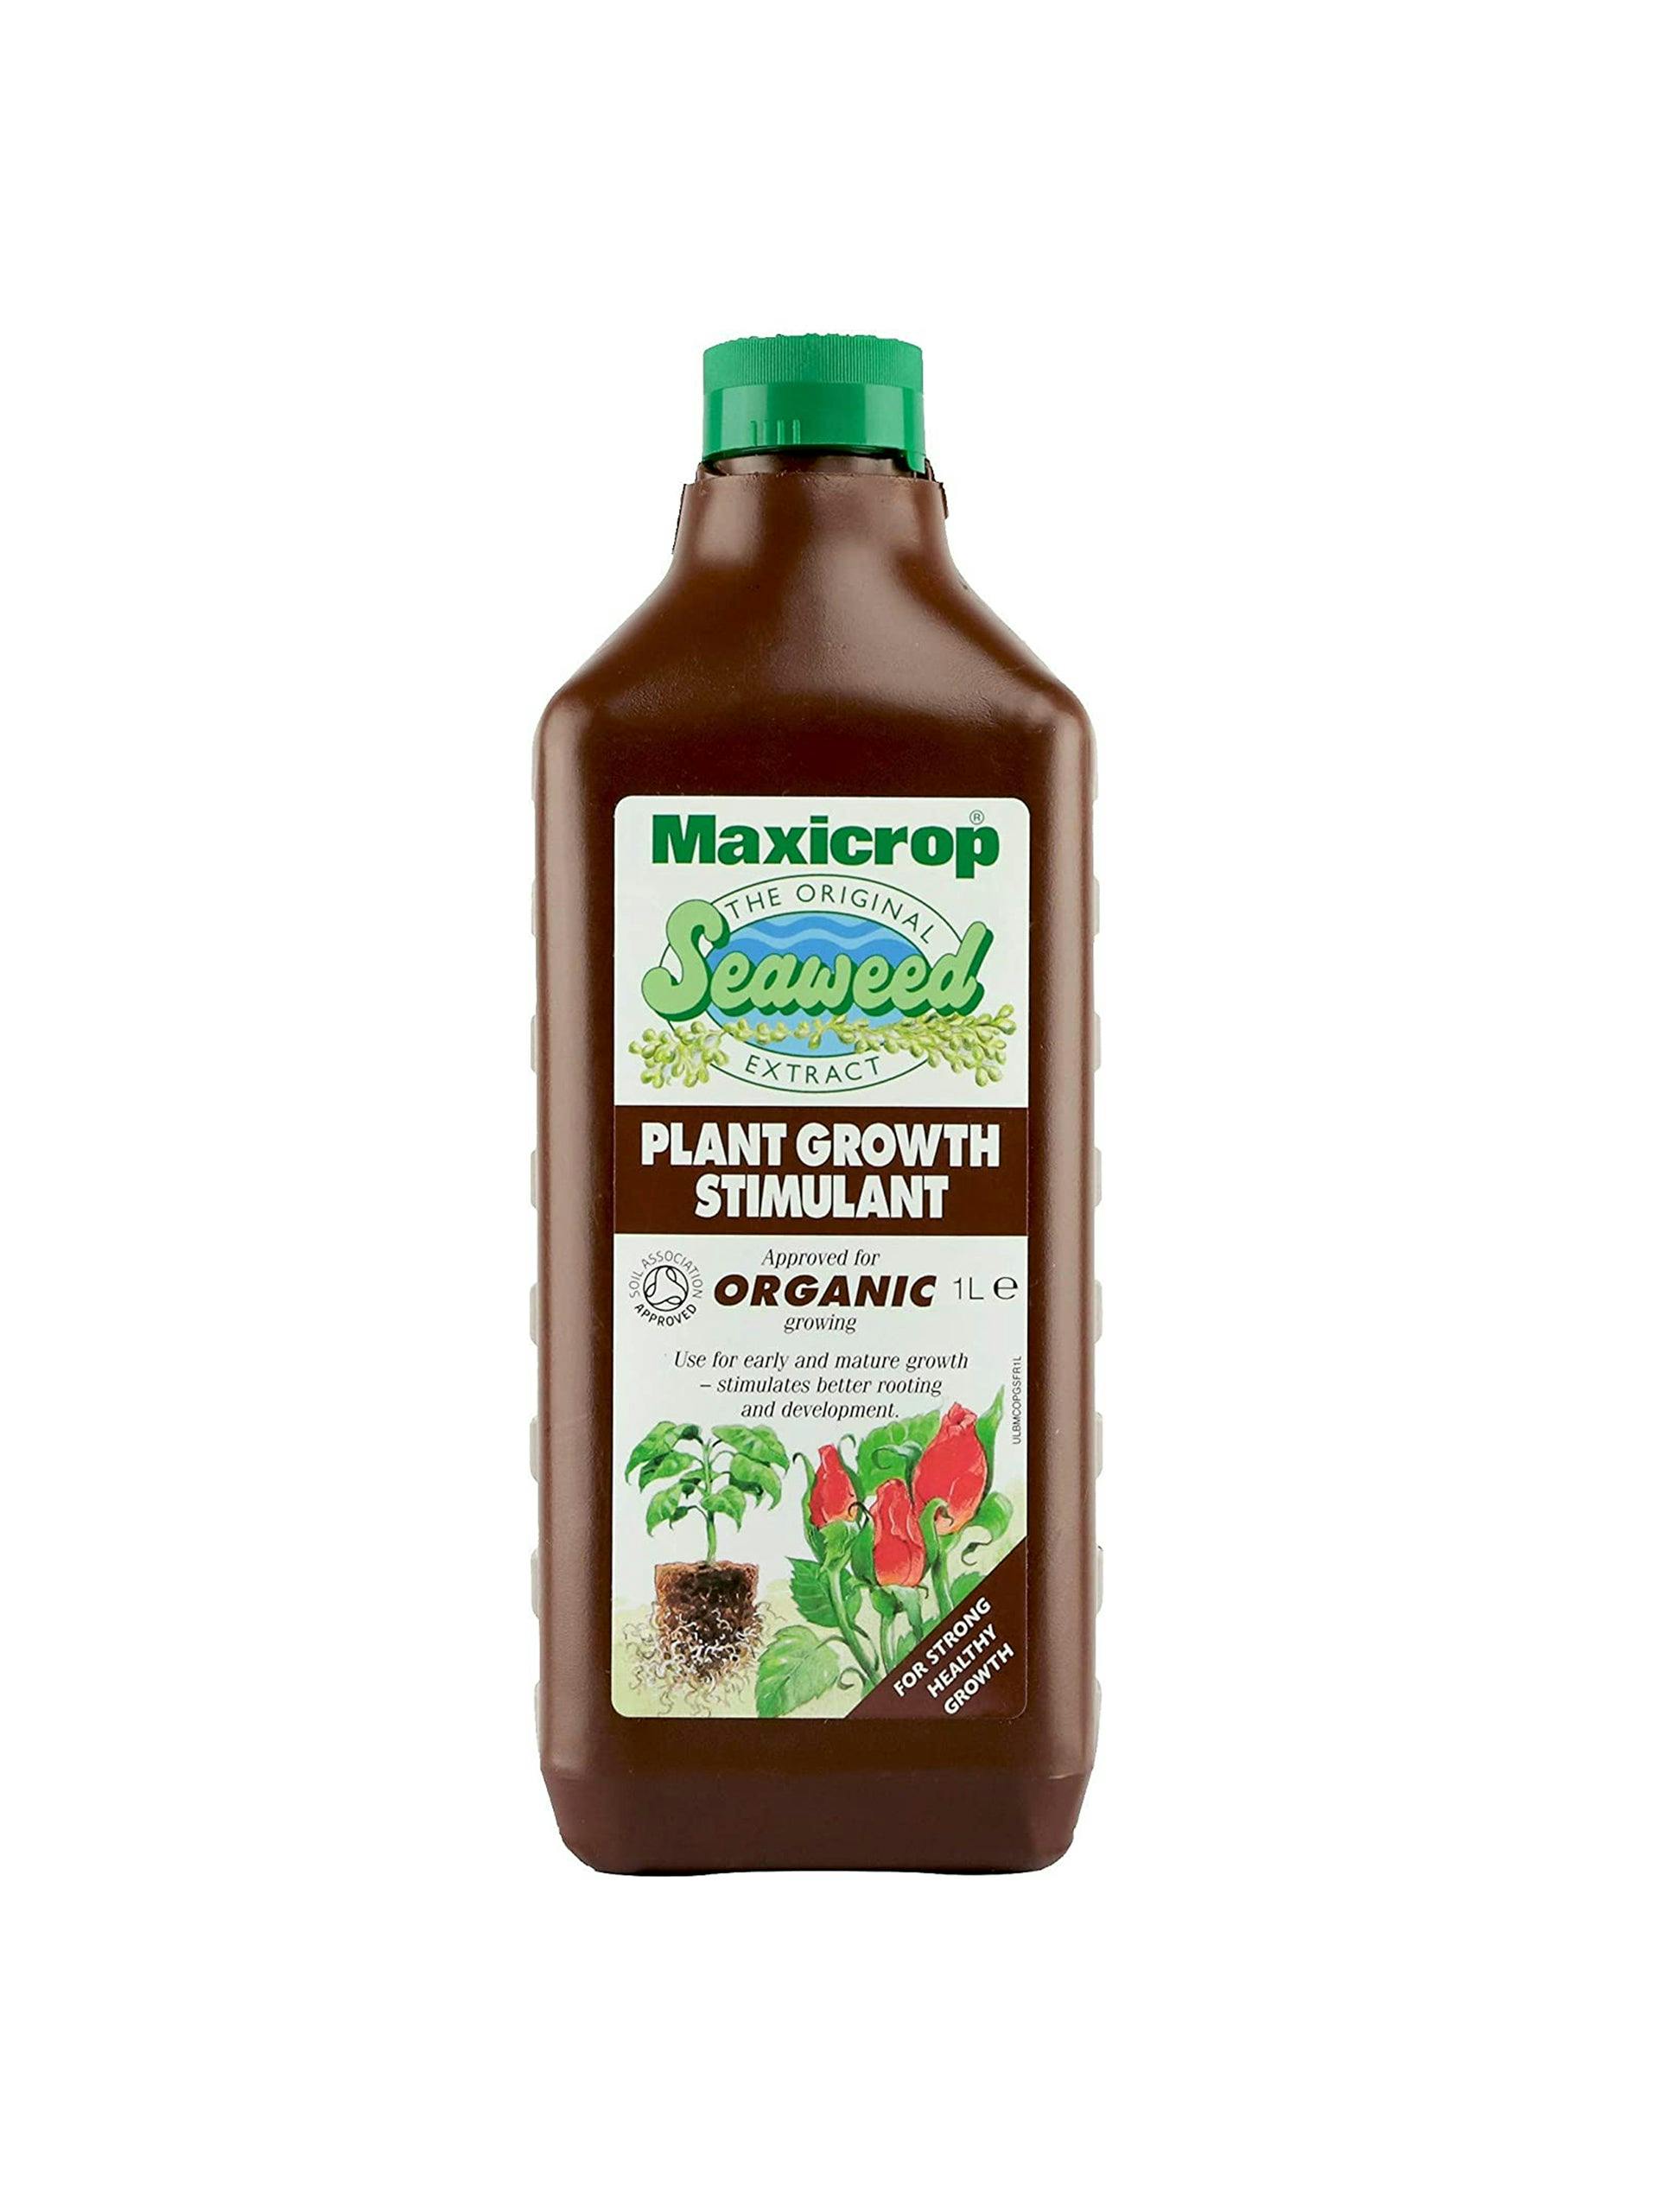 Maxicrop growth stimulant